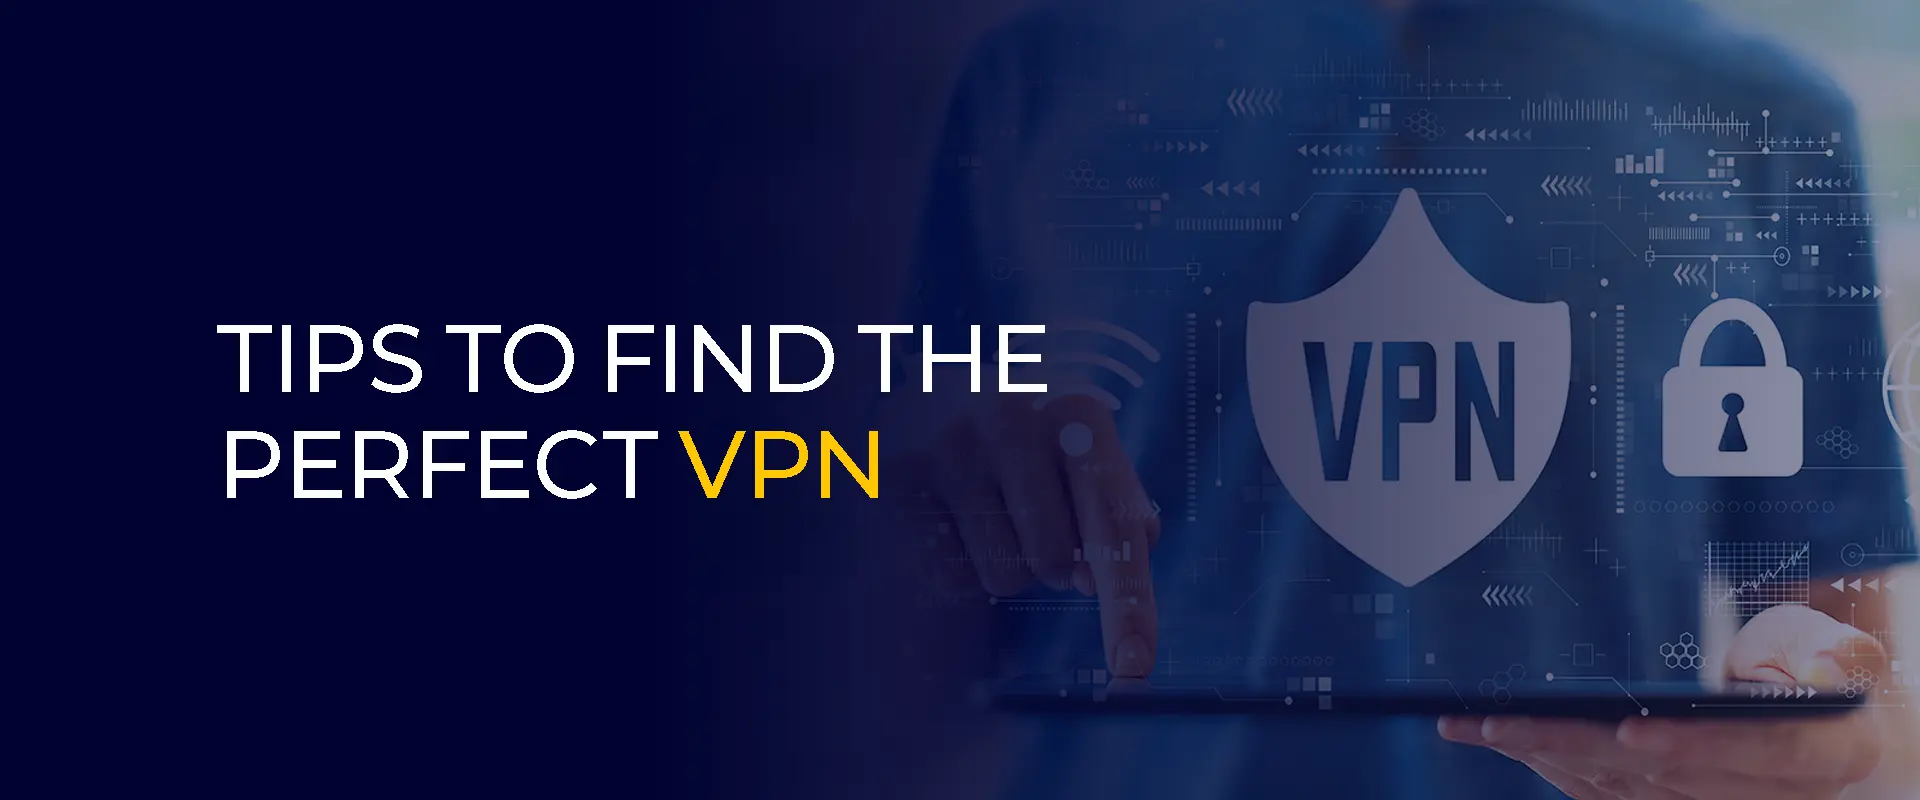 Tipps, um das perfekte VPN zu finden